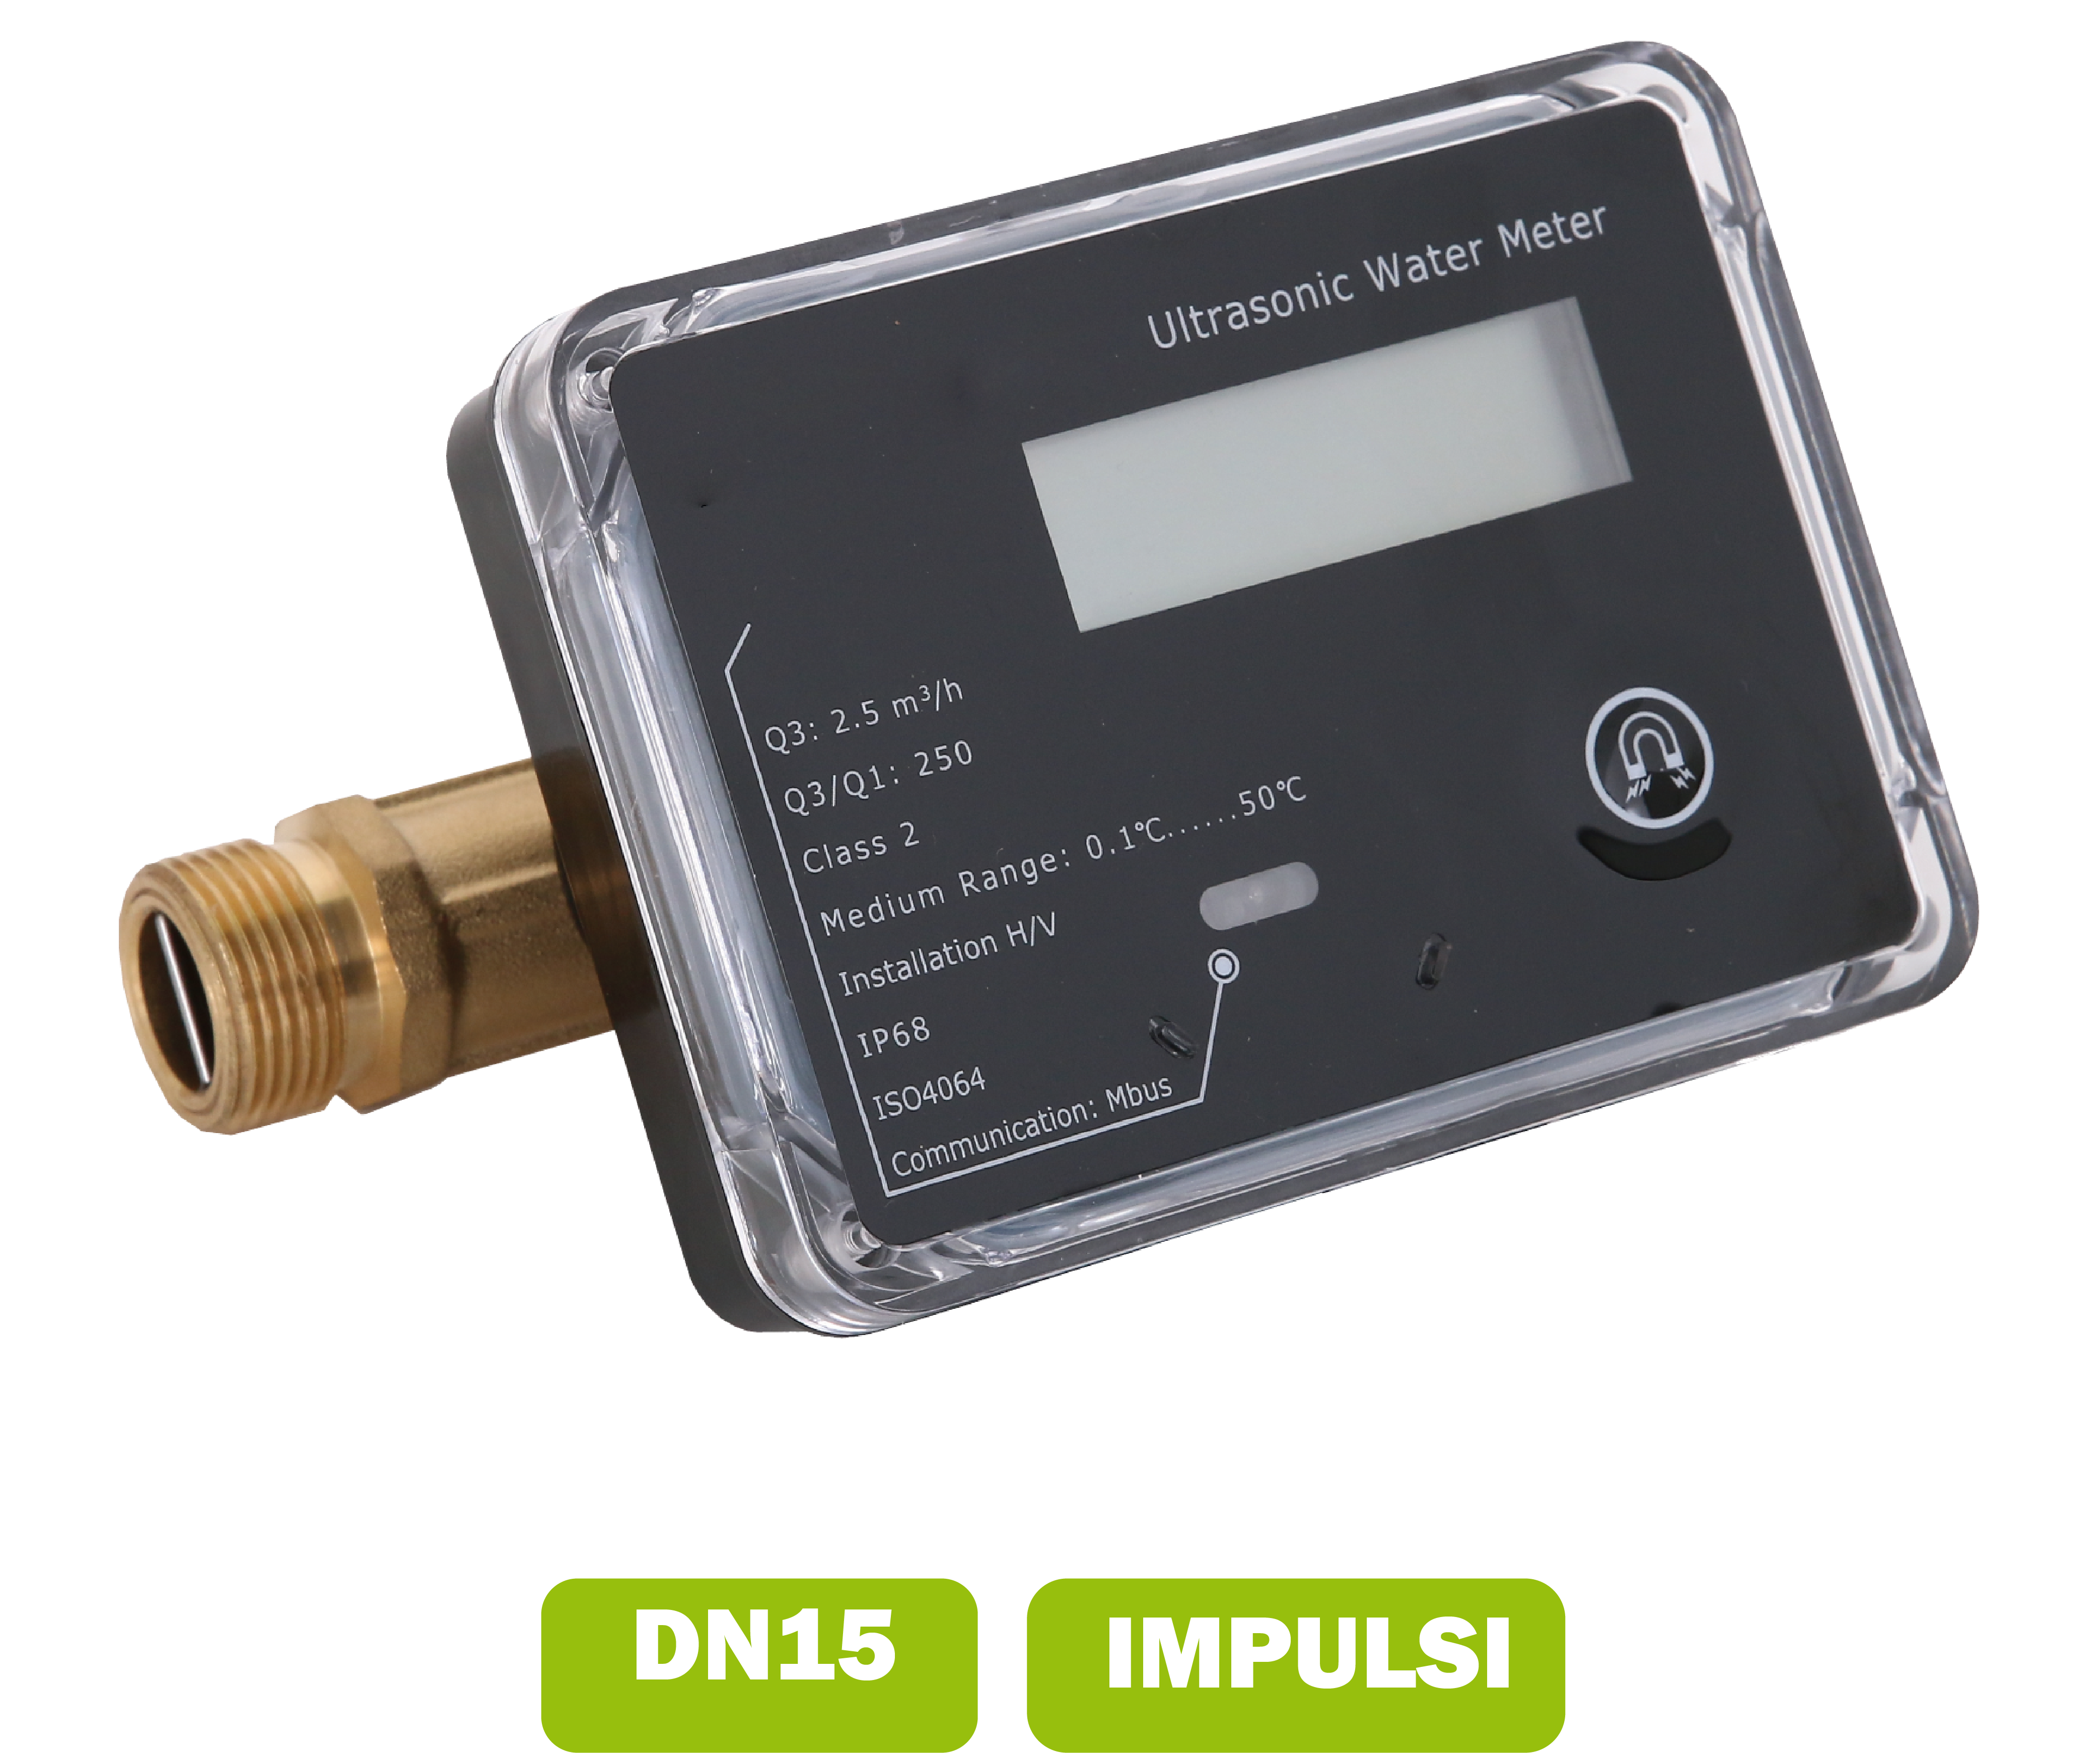 Water meter (calda fredda) a ultrasuoni DN15 portata media 1.5 m3/h con interfaccia impulsi